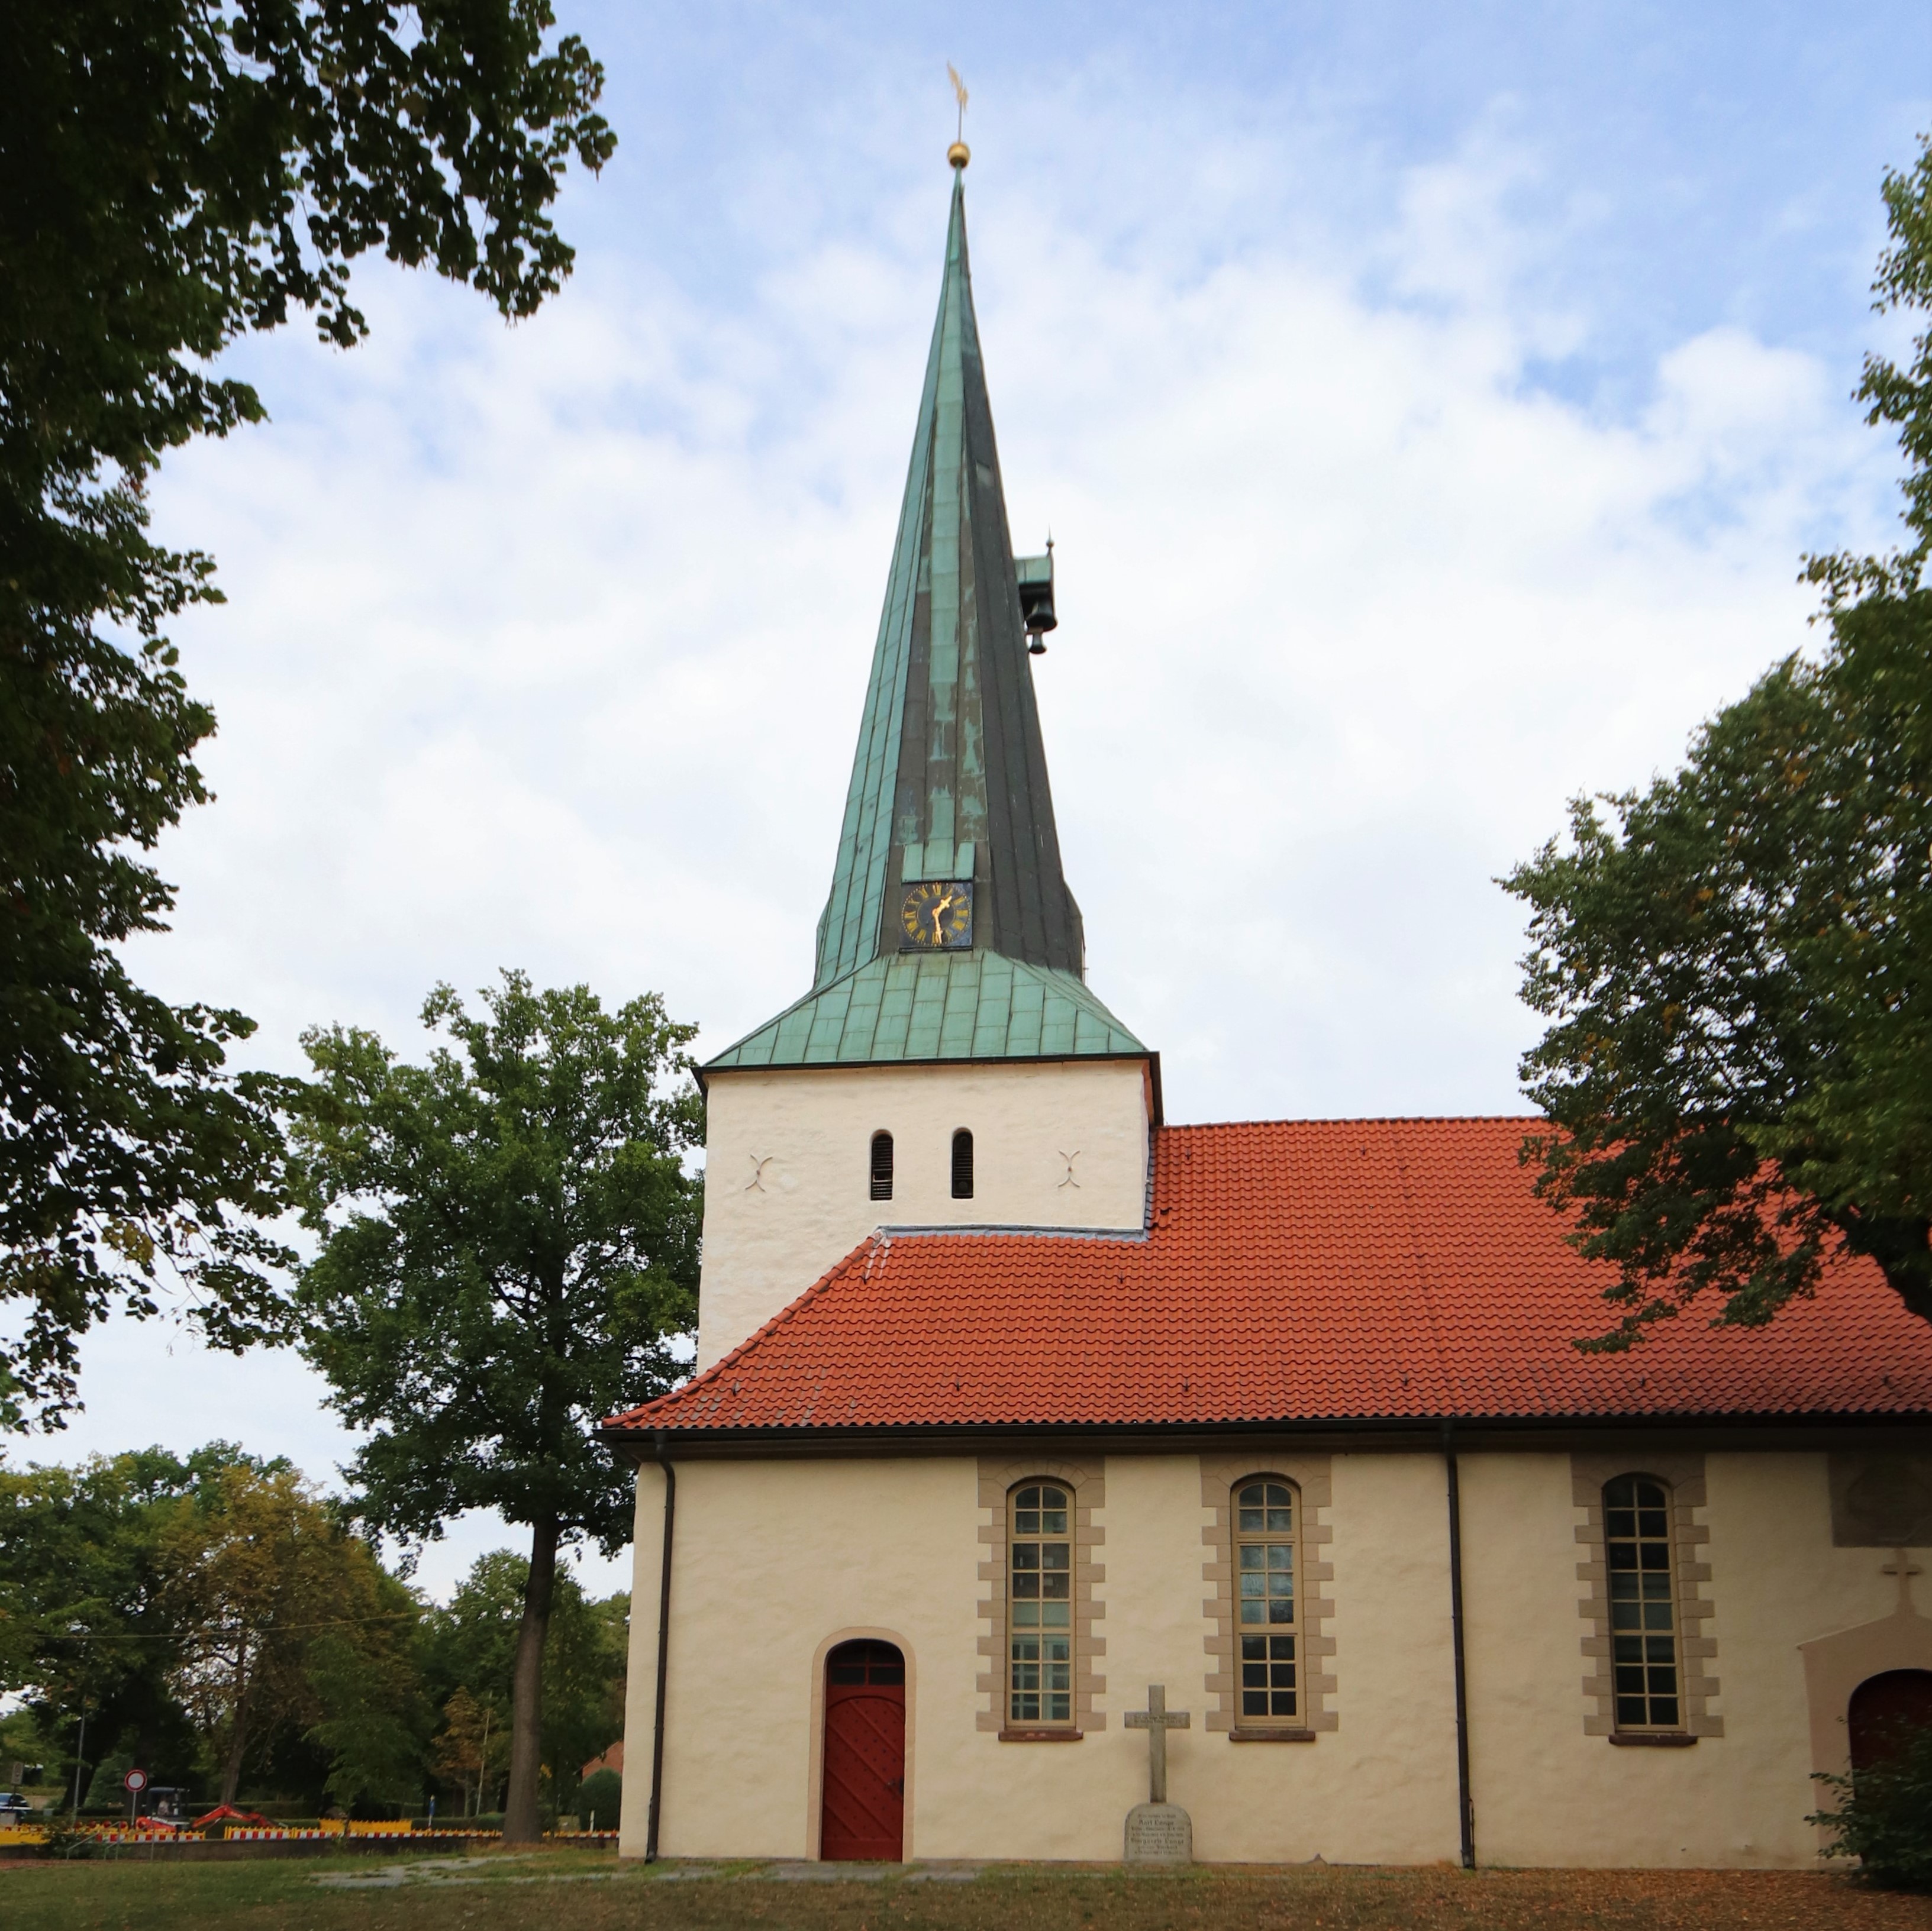 Edemissenkirche